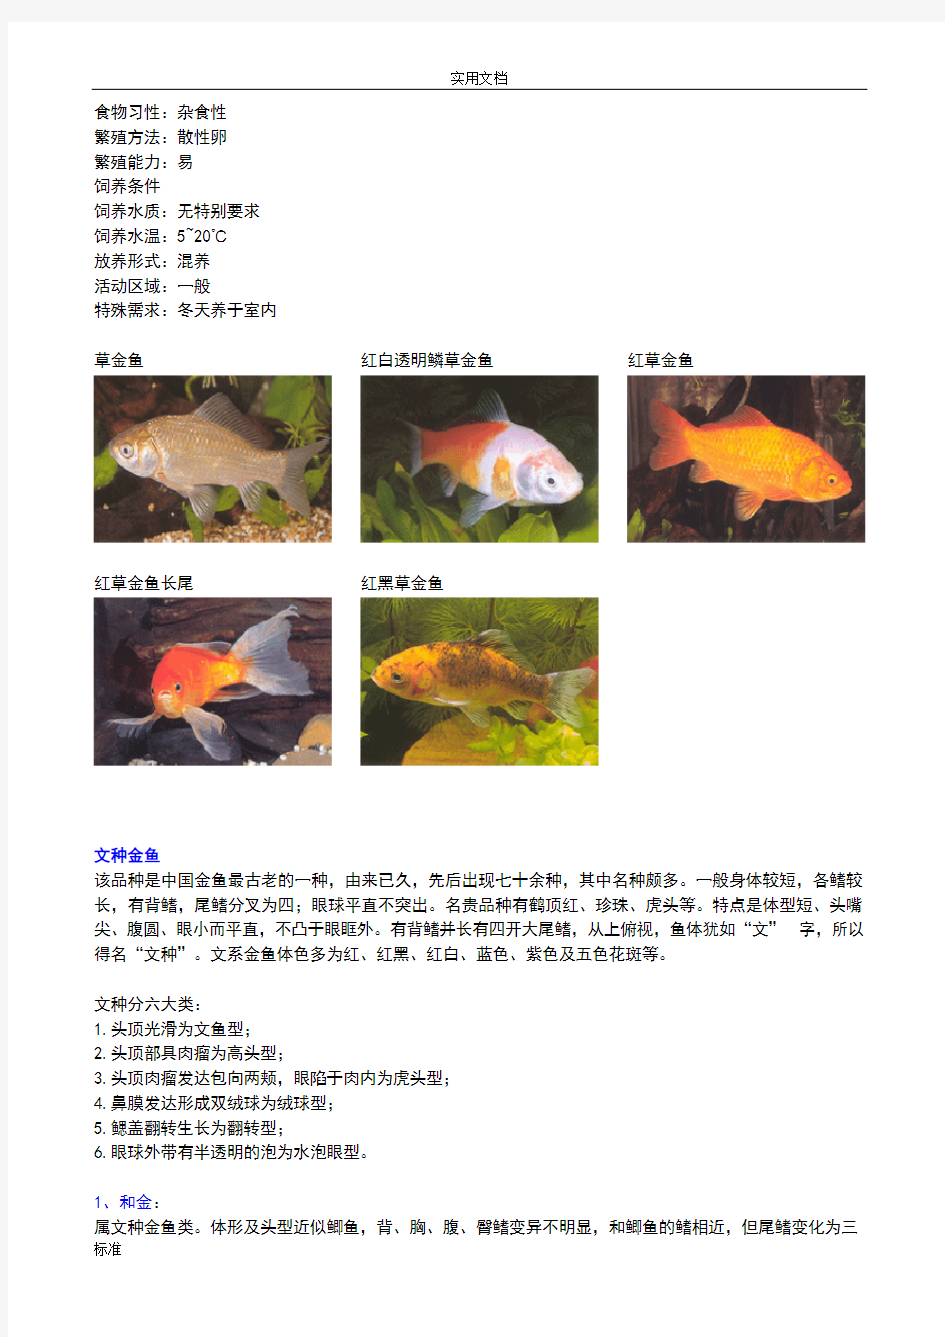 (全)金鱼种类及图片